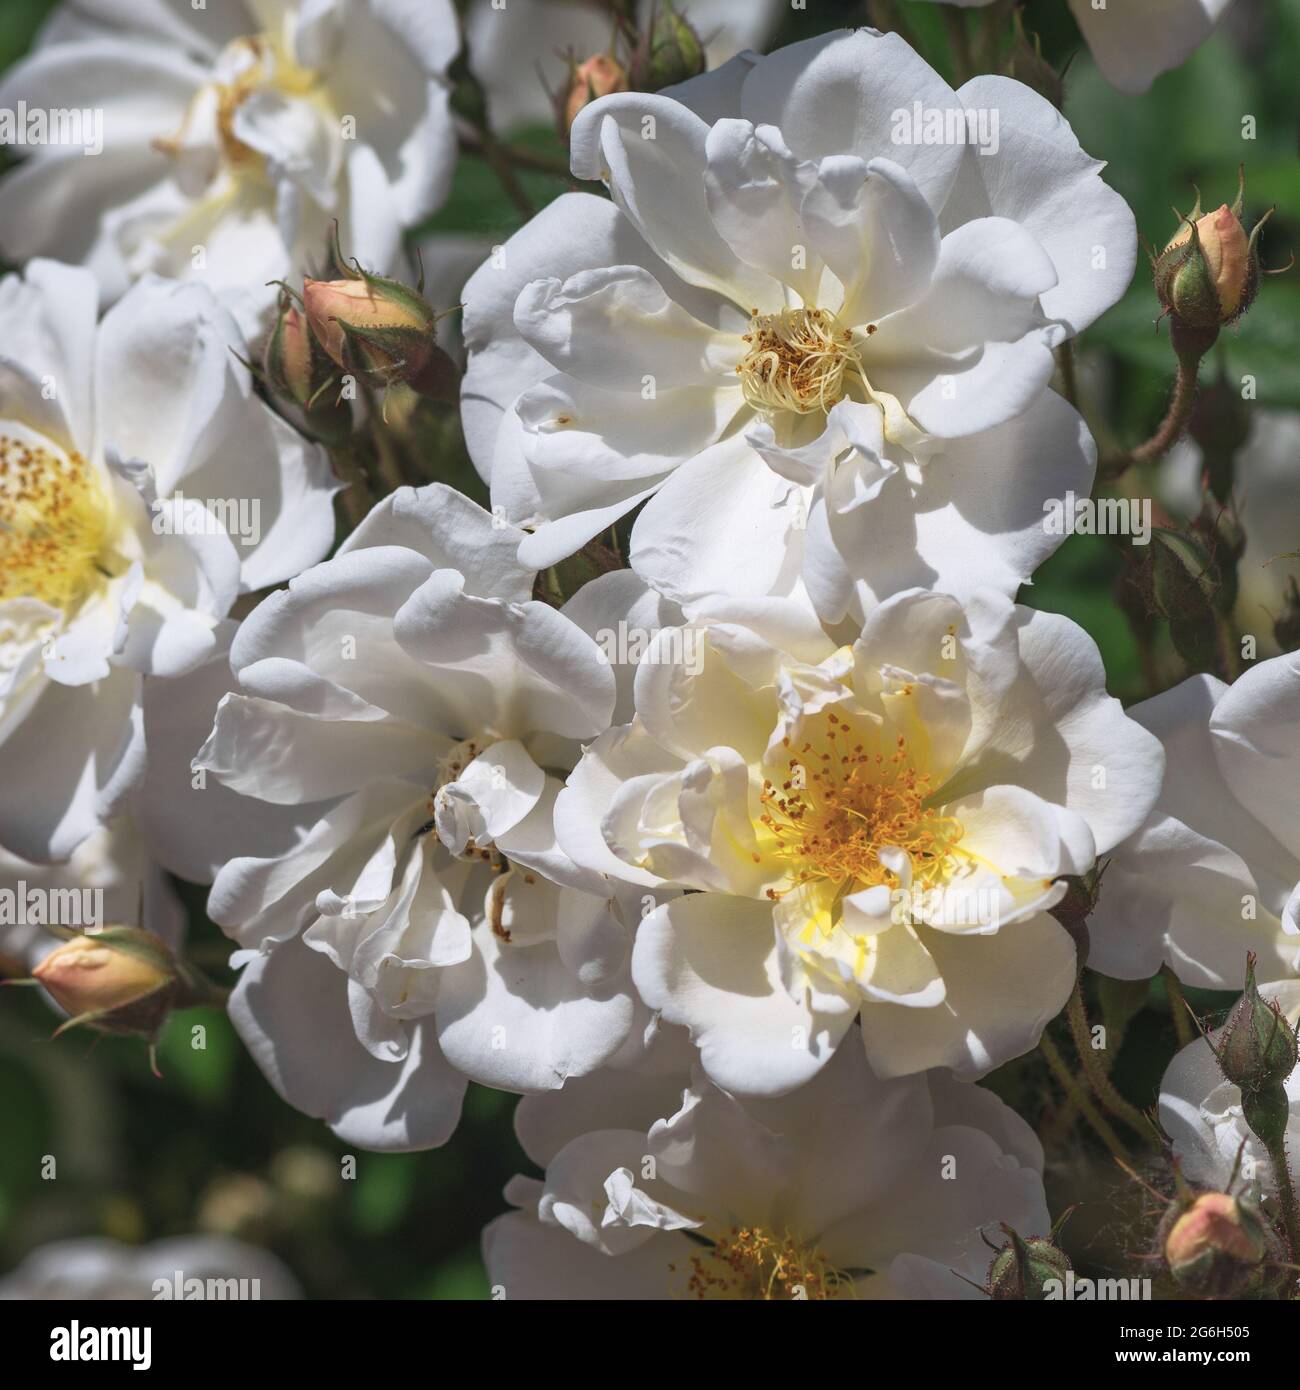 Rose Iceberg - weiße, flache, schalenförmige, mittelgroße Blüten (25-35 Blütenblätter) mit einem milden Aroma in zahlreichen Blütenständen. Stockfoto